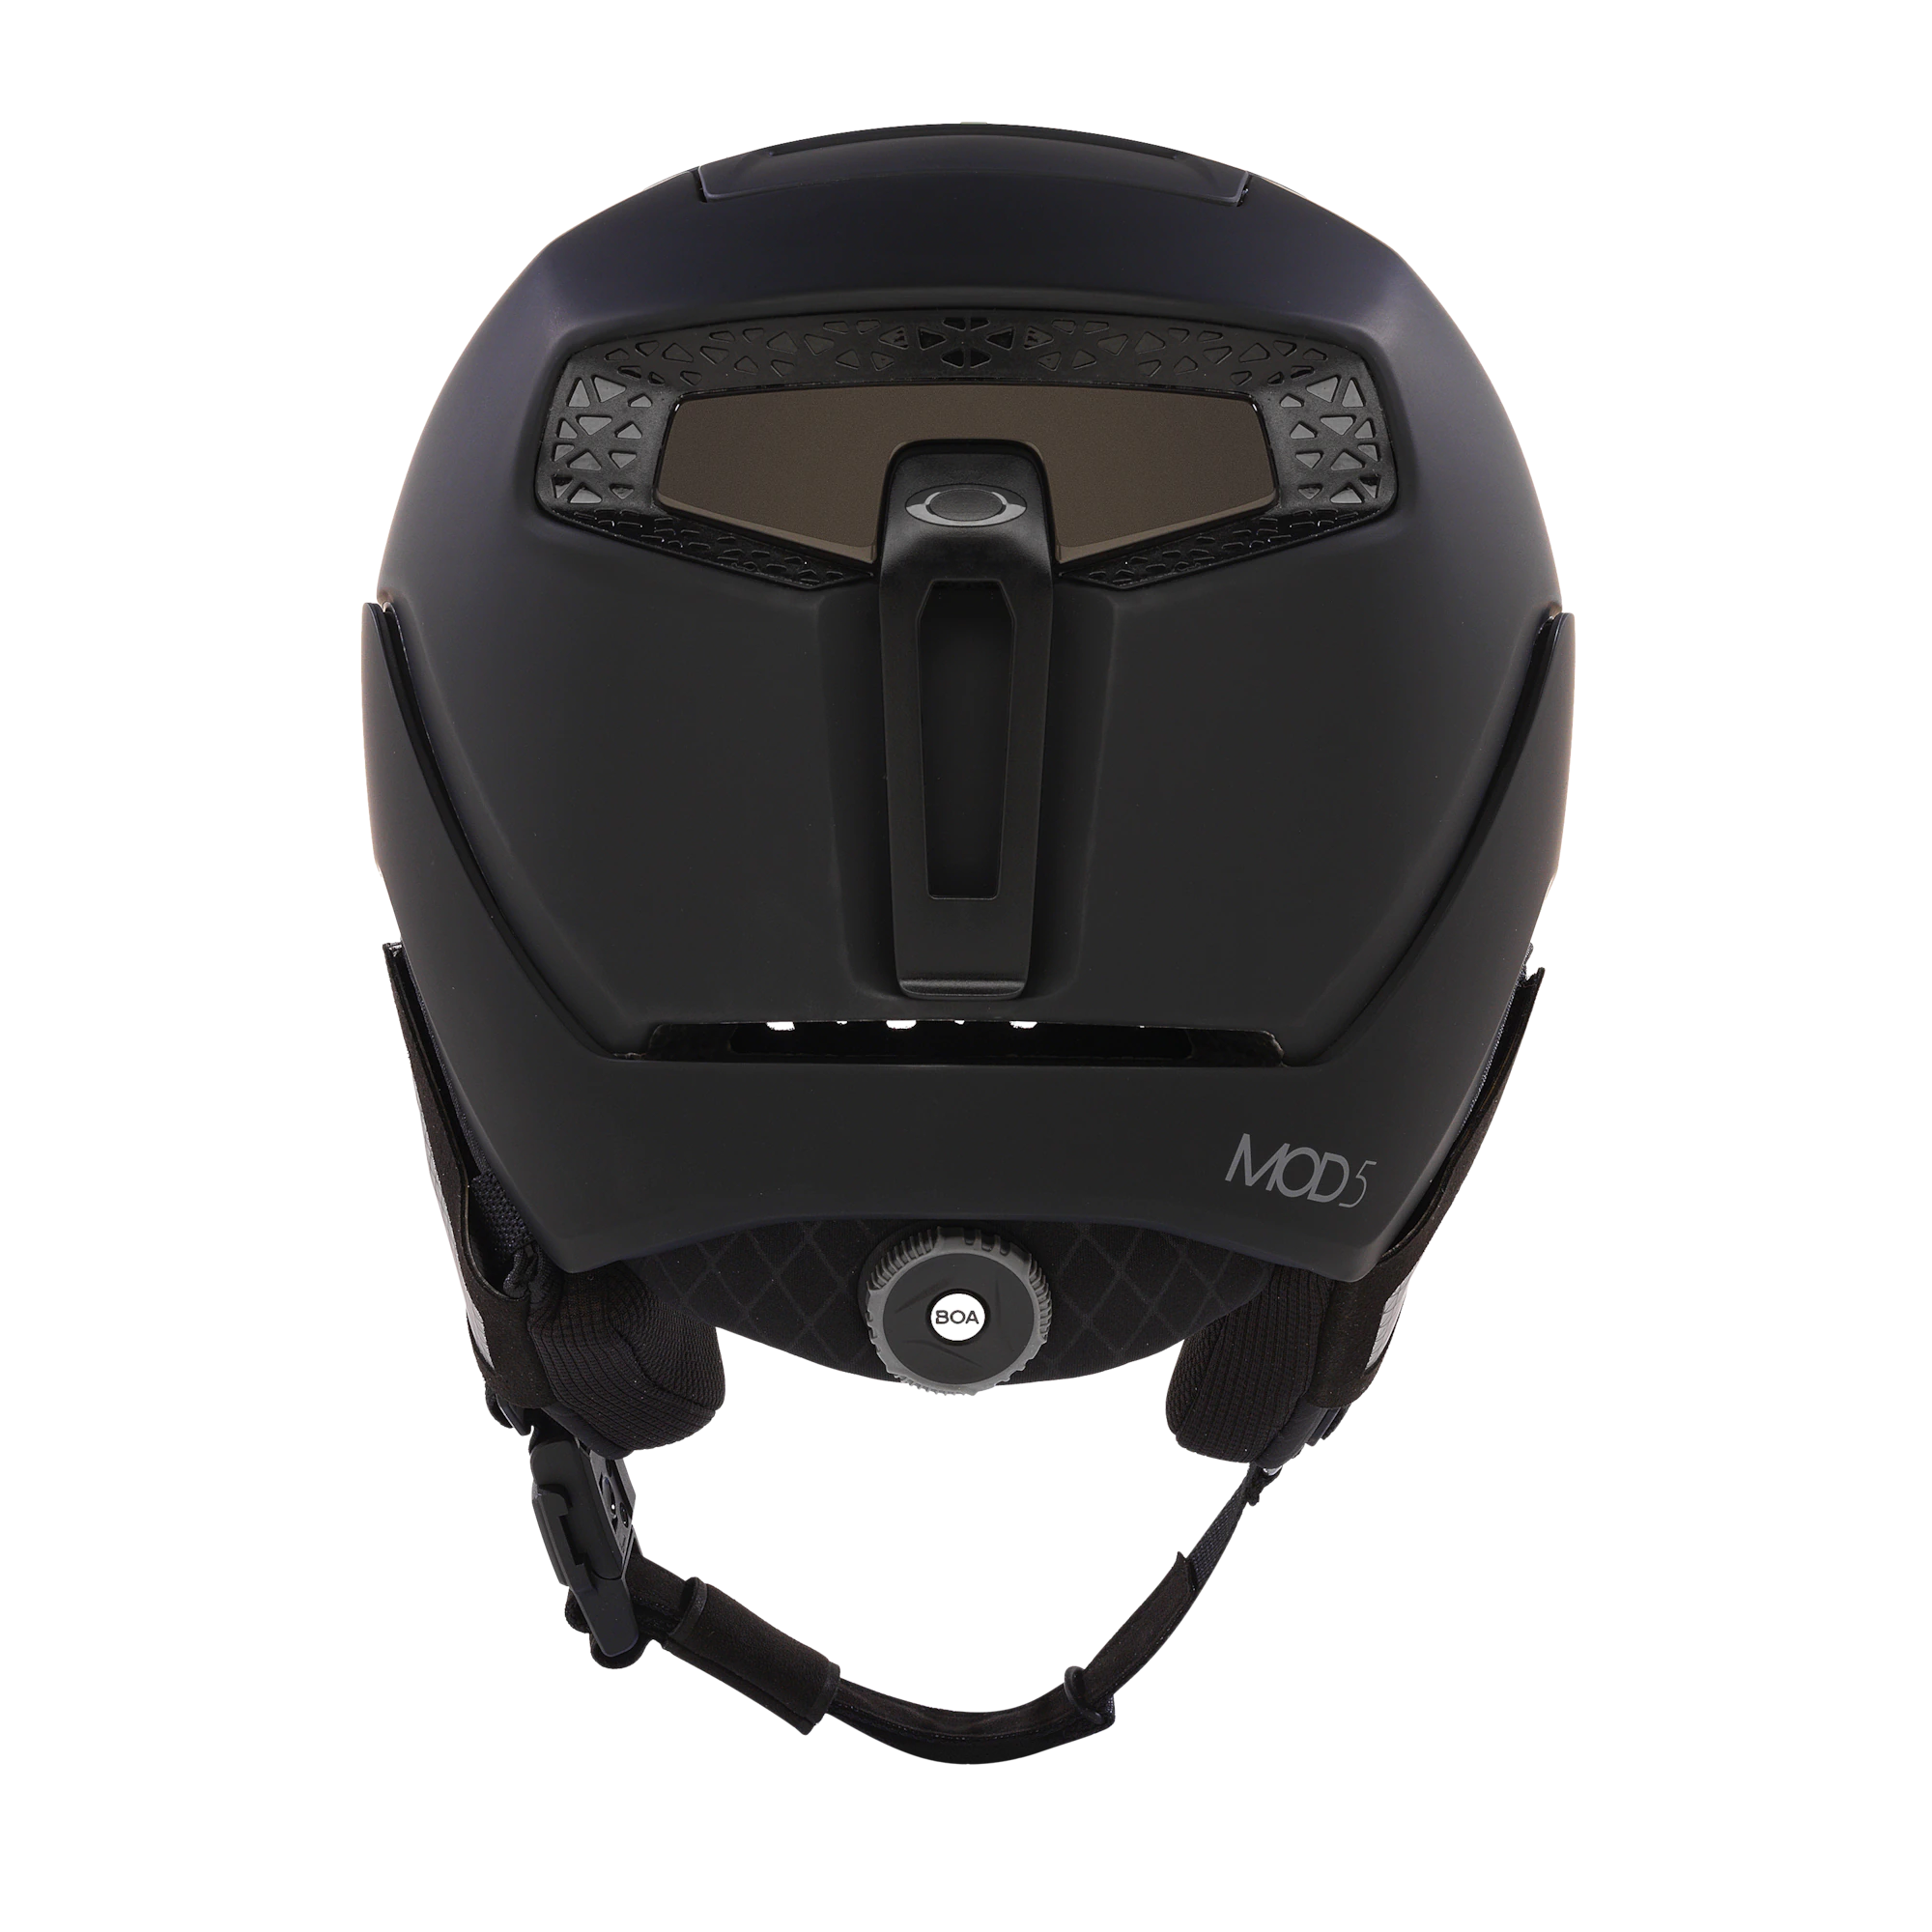 Oakly Mod 5 helmet blackout